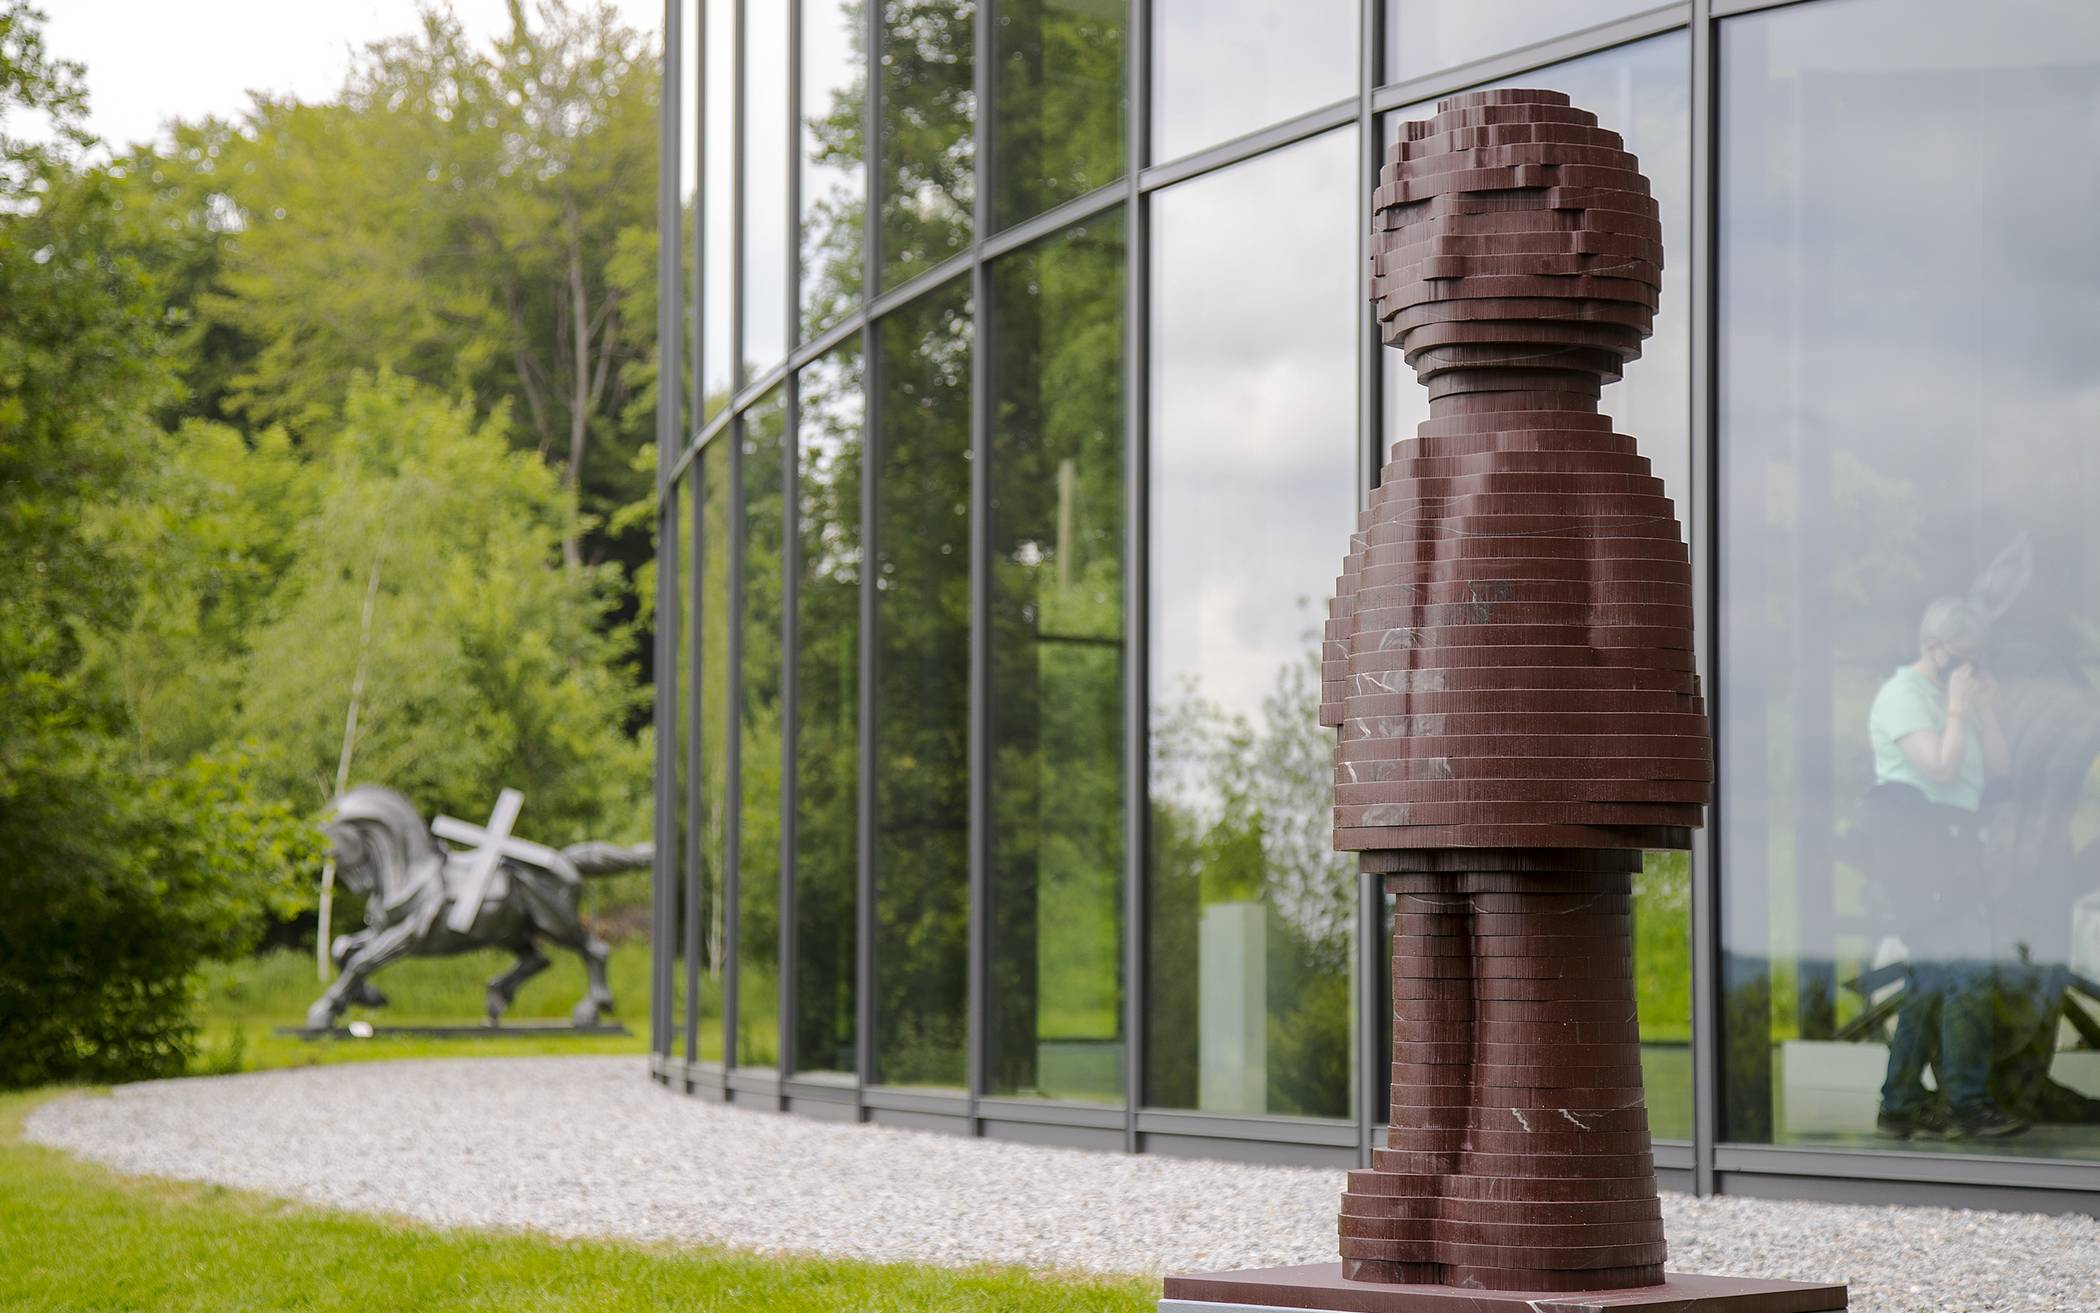  Wer Eckehard Lowischs "Engels 2020 Skulptur" irgendwo in Wuppertal (wie hier im Skulpturenpark Waldfrieden, wo sie ihre Stadt-Reise begann) sieht, kann sie gerne fotografieren und unter dem Hashtag #engelstour2020 posten. 